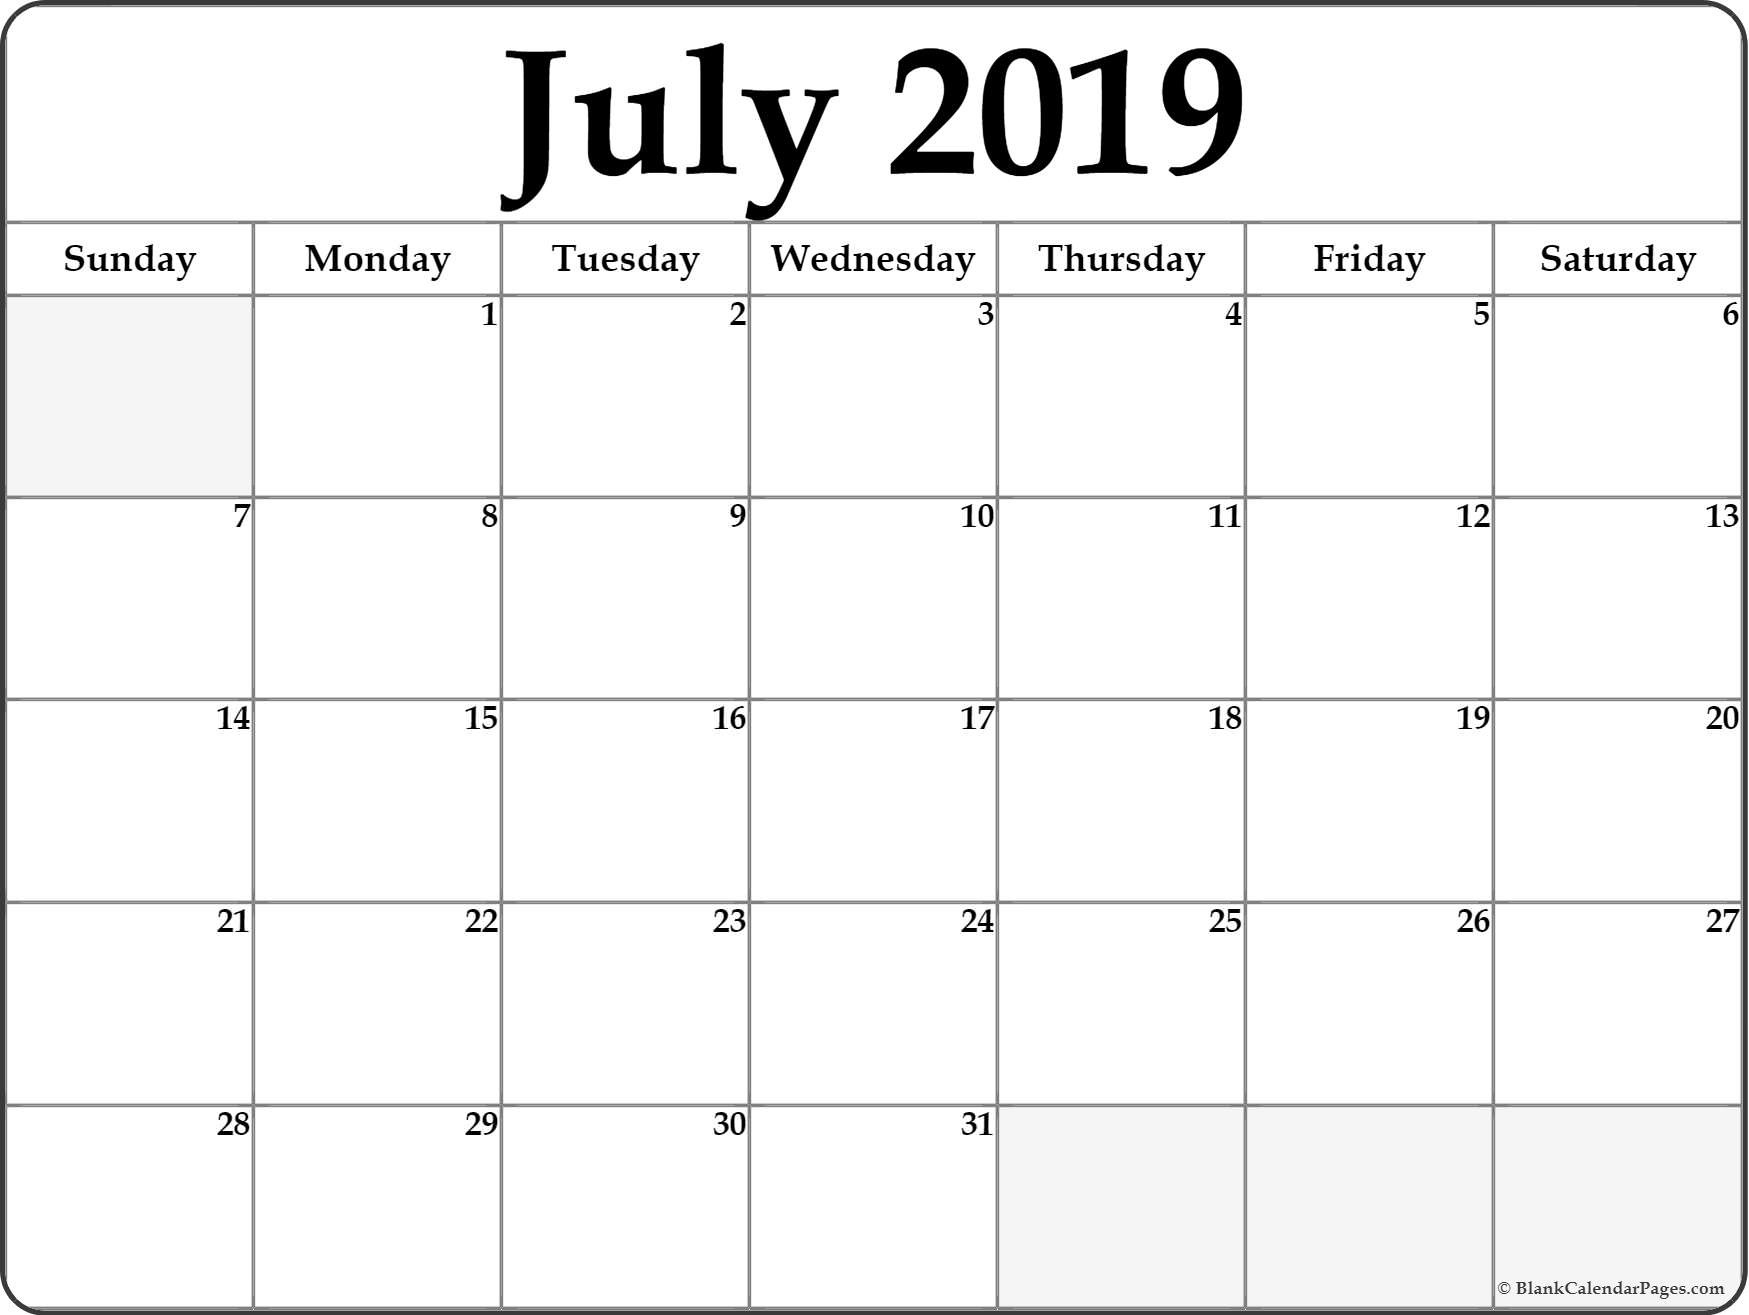 July August September 2019 Calendar | July Month Calendar